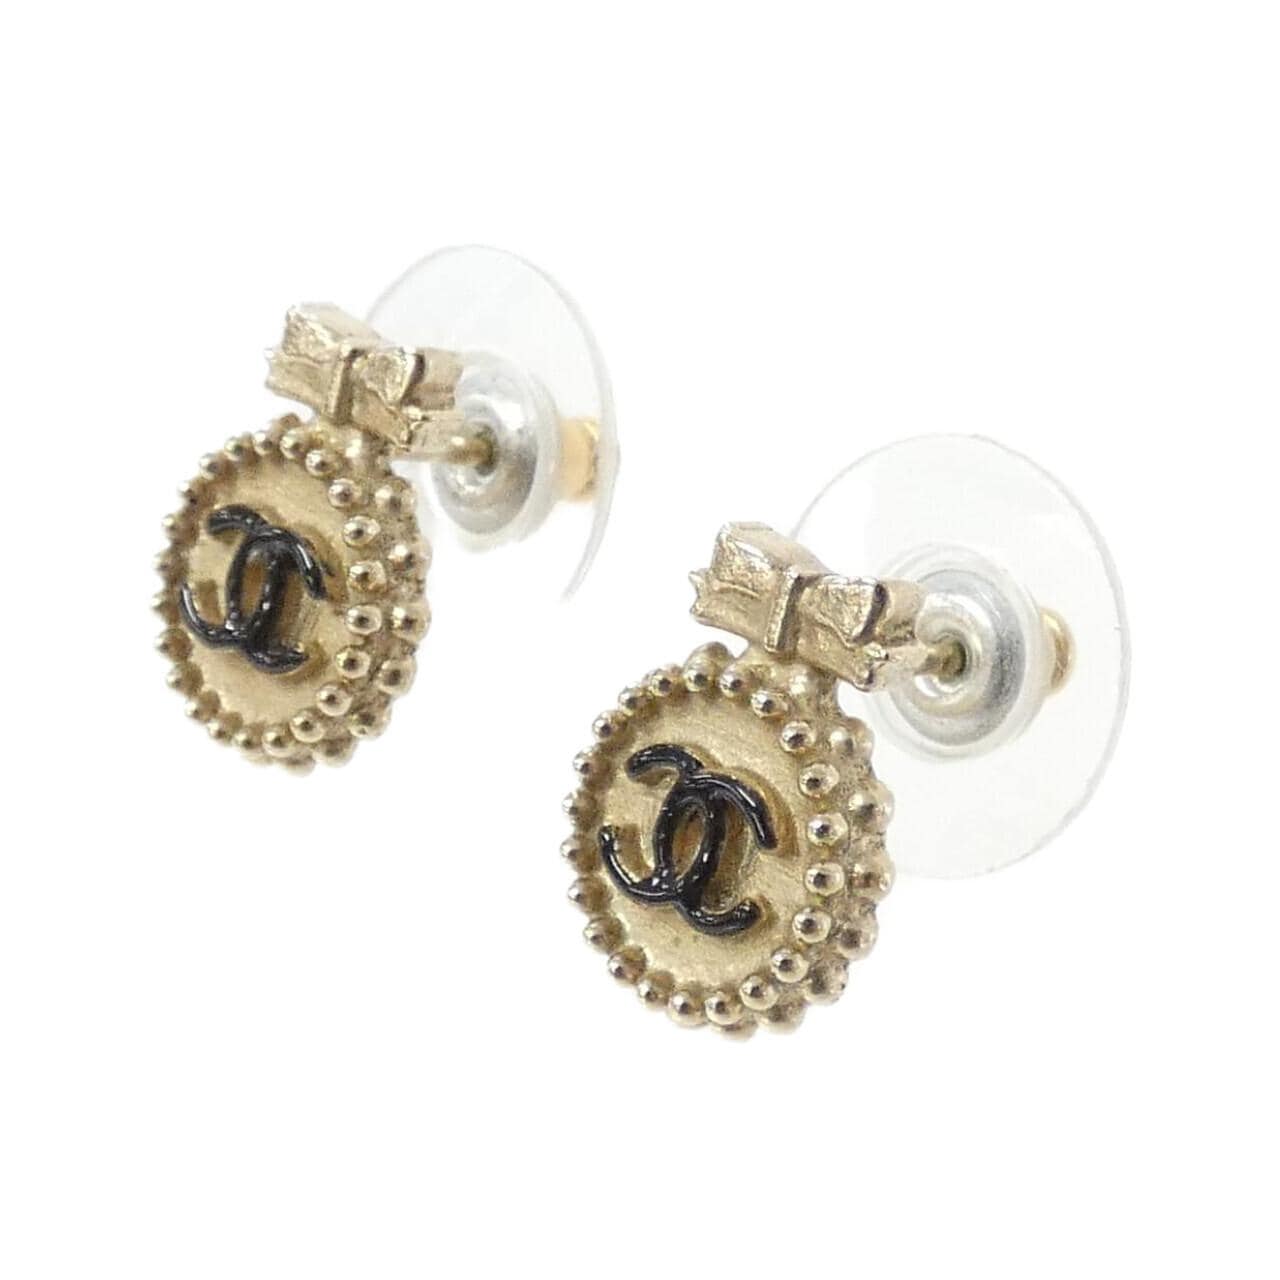 CHANEL 61356 earrings